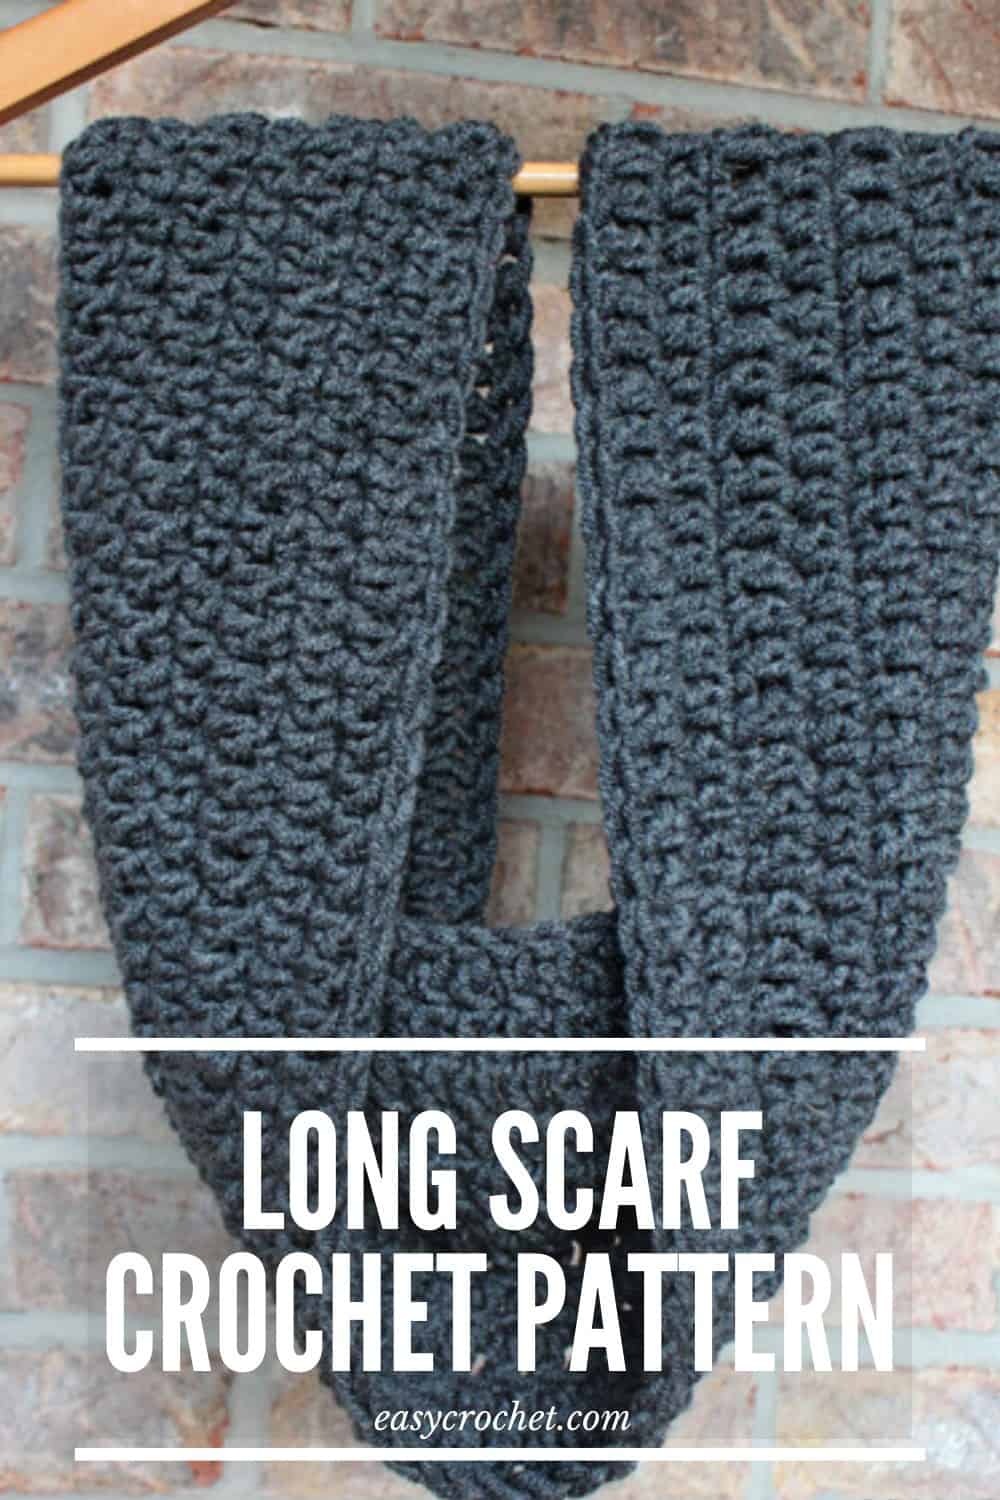 Long Crochet Scarf Pattern via @easycrochetcom